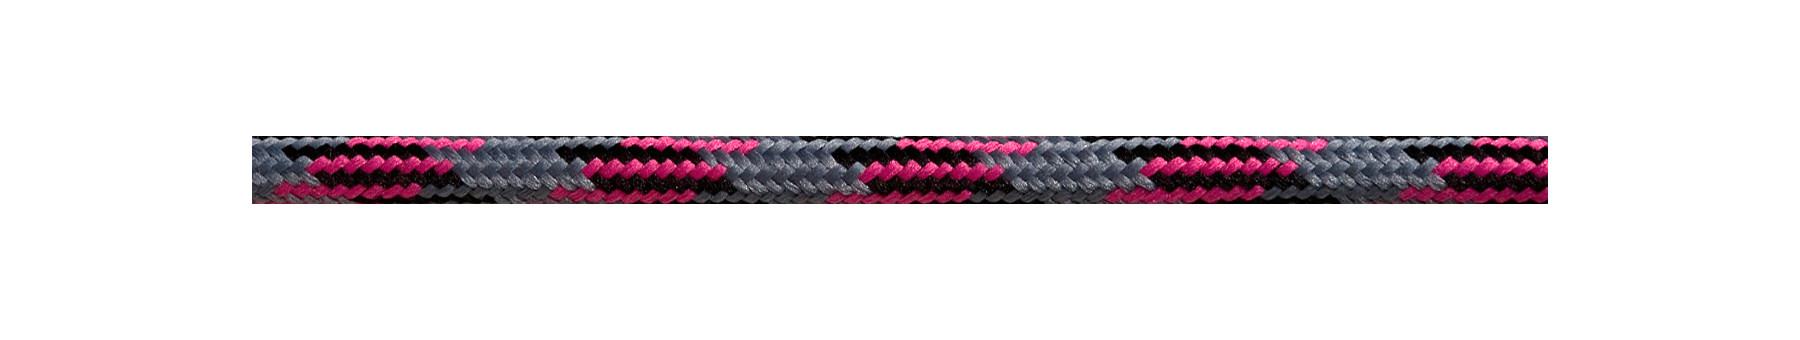 Textile Cable Grey-Black-Cerise